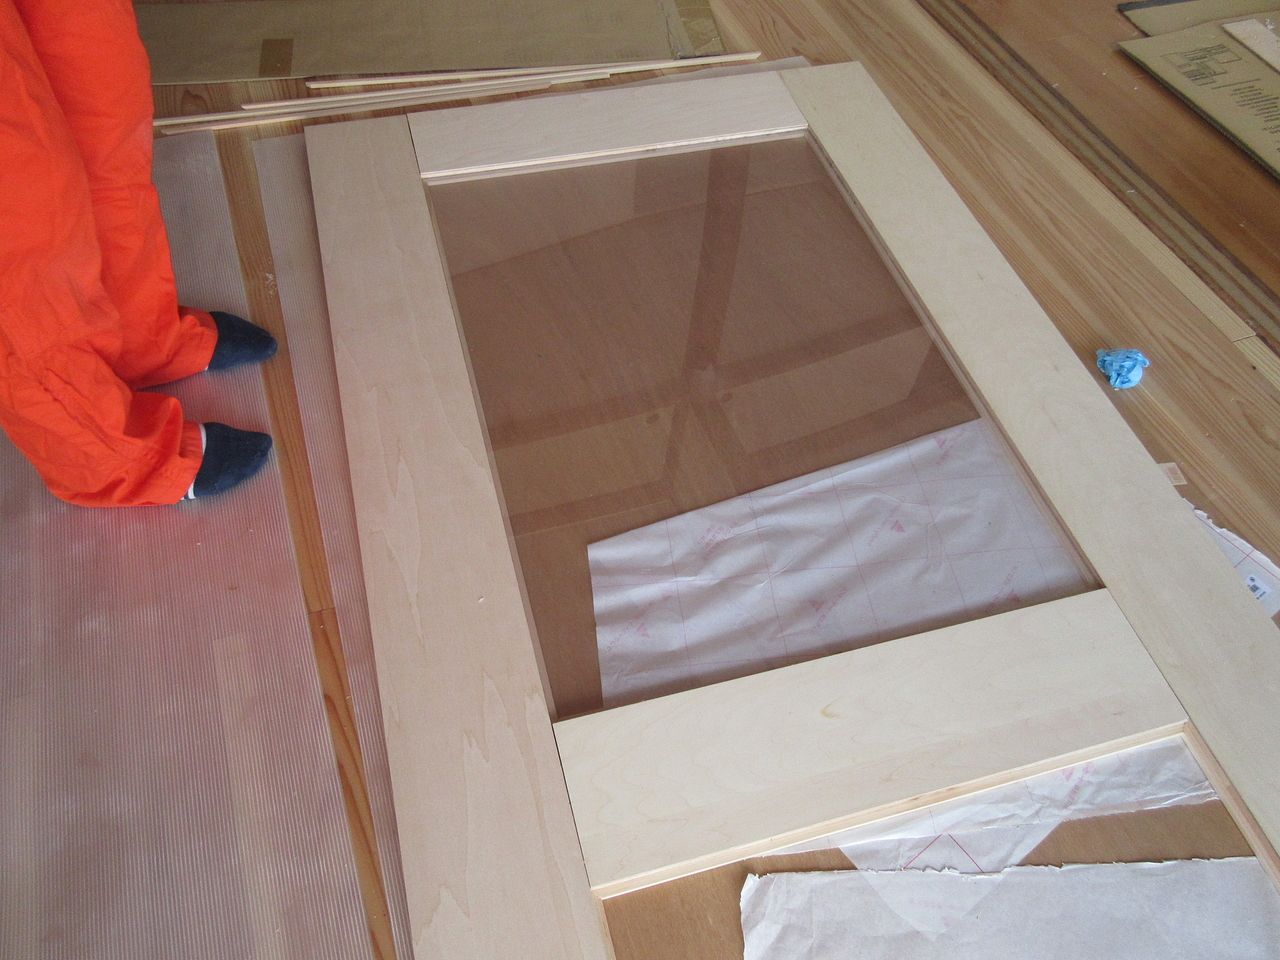 最初に取り付けた角材のボンドが乾いたら、アクリル板を木枠にはめ込み、その上から角材で同じように固定すれば完成です。